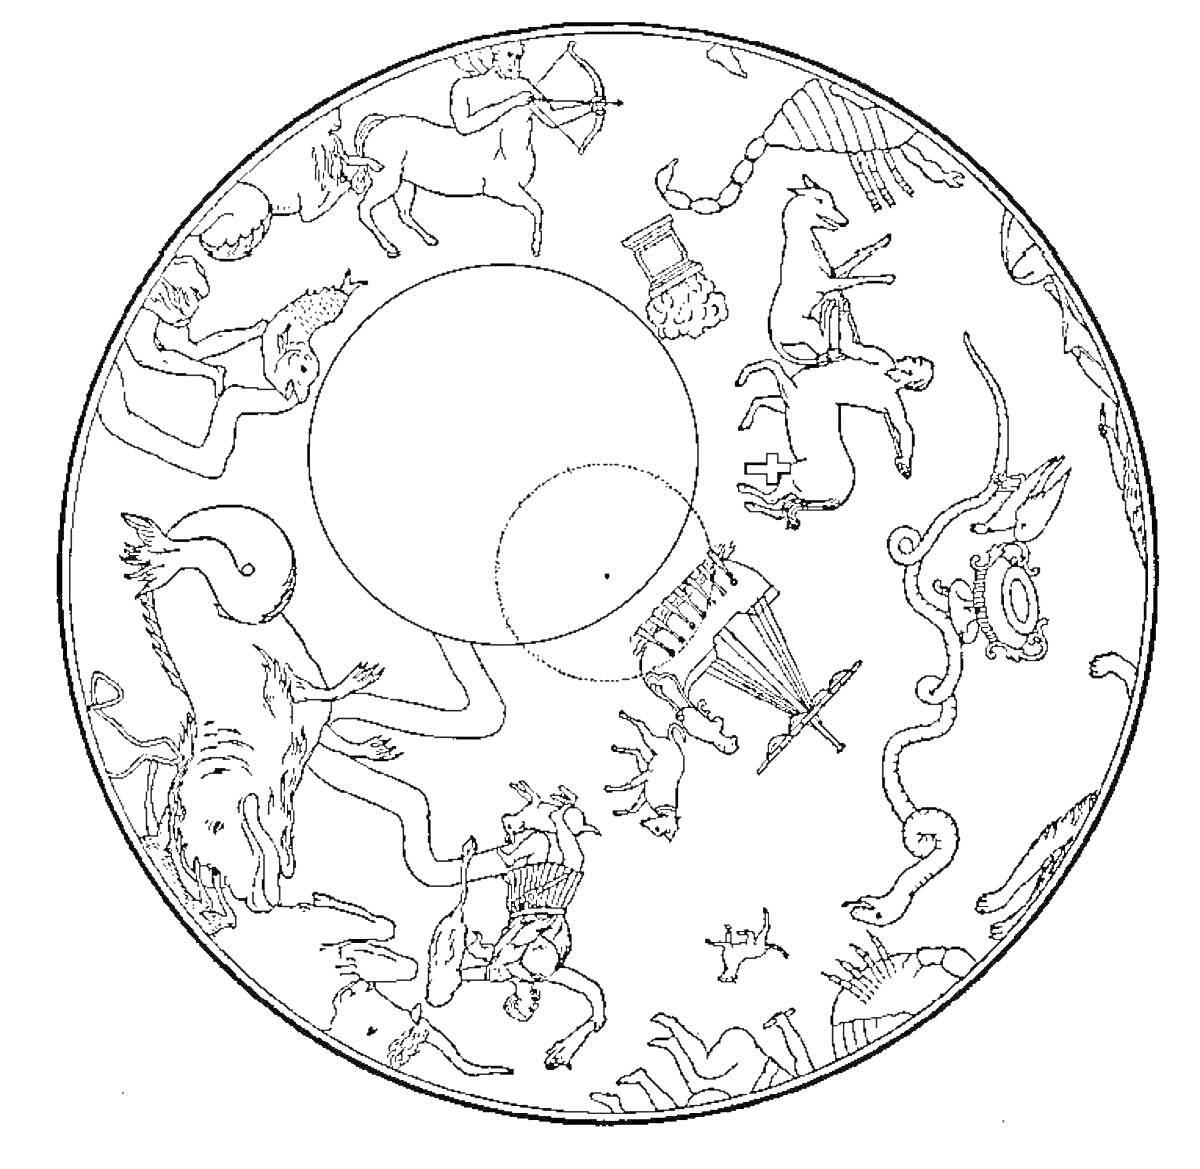 Раскраска Круглая карта с изображением созвездий, включая 'Стрельца', 'Рака', 'Змея', 'Весы', 'Водолея', 'Тельца', 'Ориона' и другие элементы созвездий